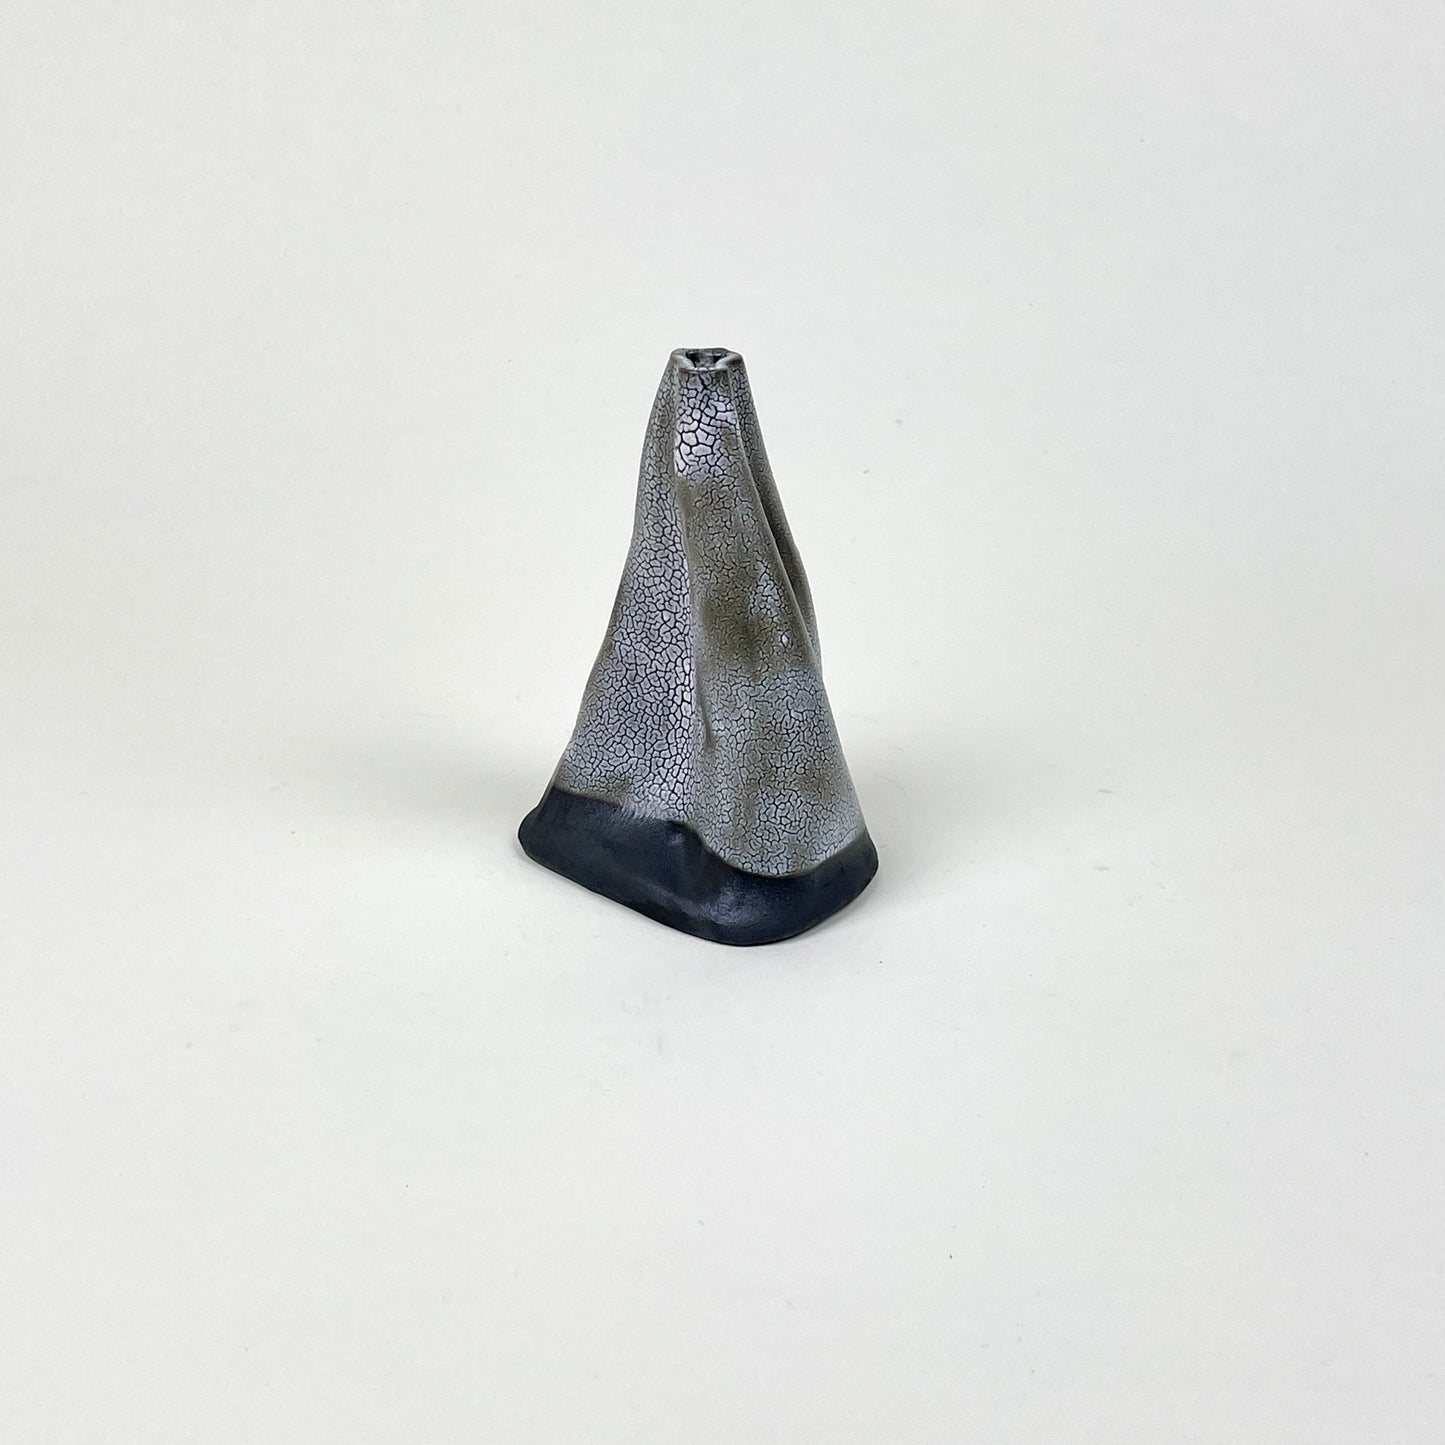 Black grey volcano vase (L) by Astrid Öhman.